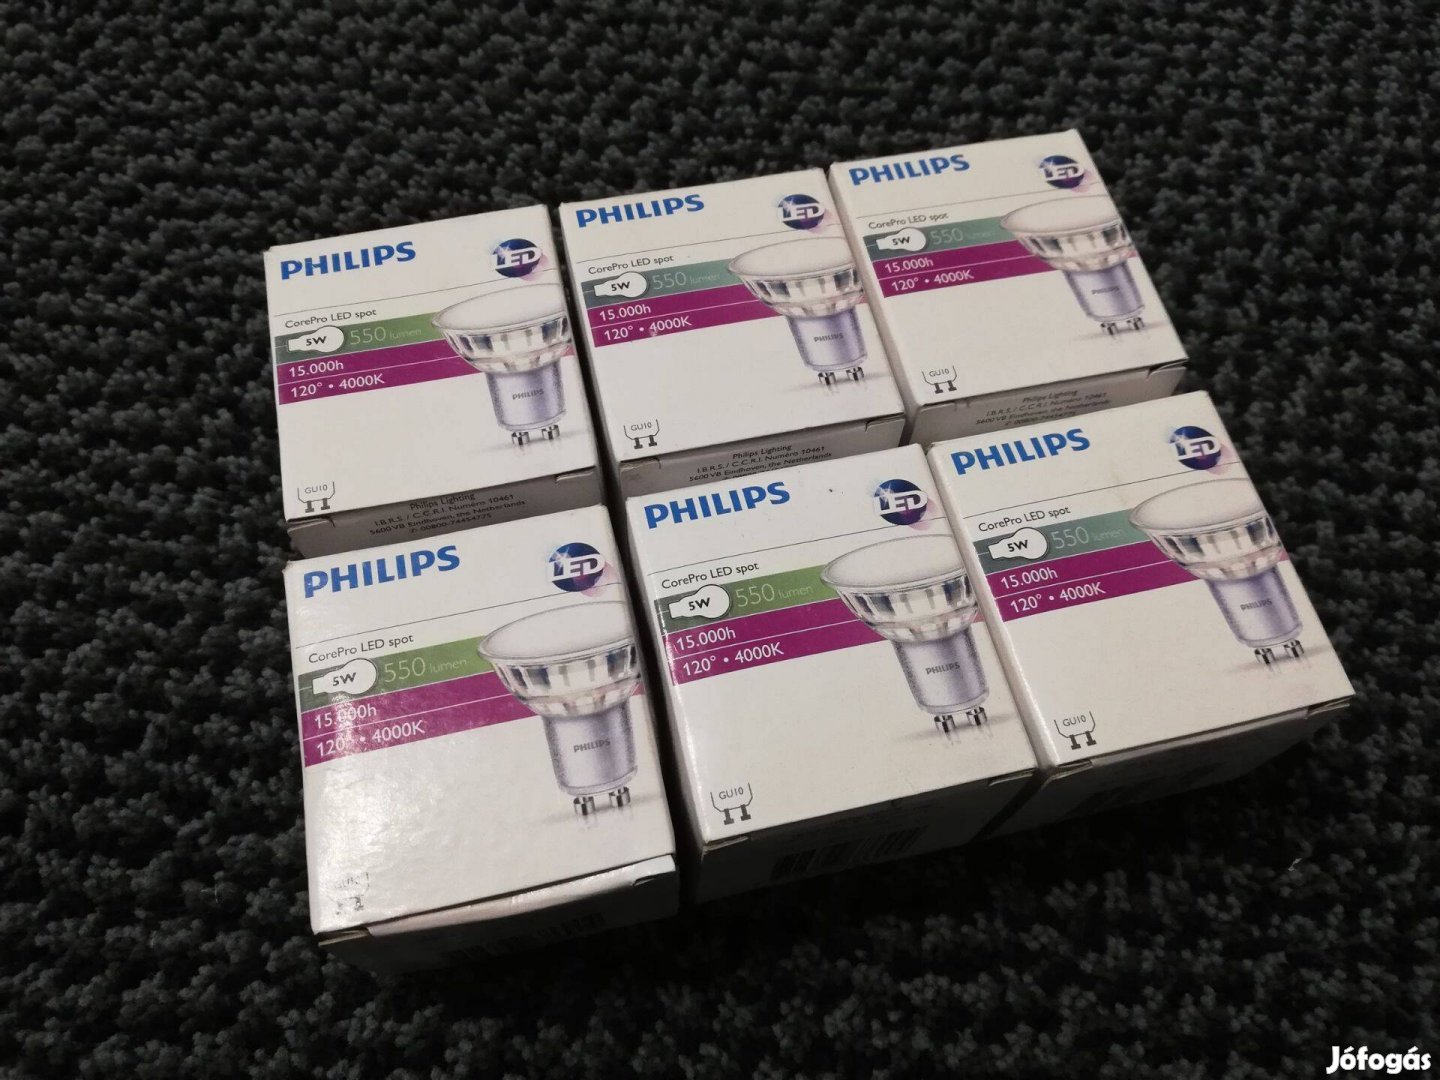 Philips Corepro LED Spot GU10 izzó 5W, 4000K, 550lm, 120fok eladó